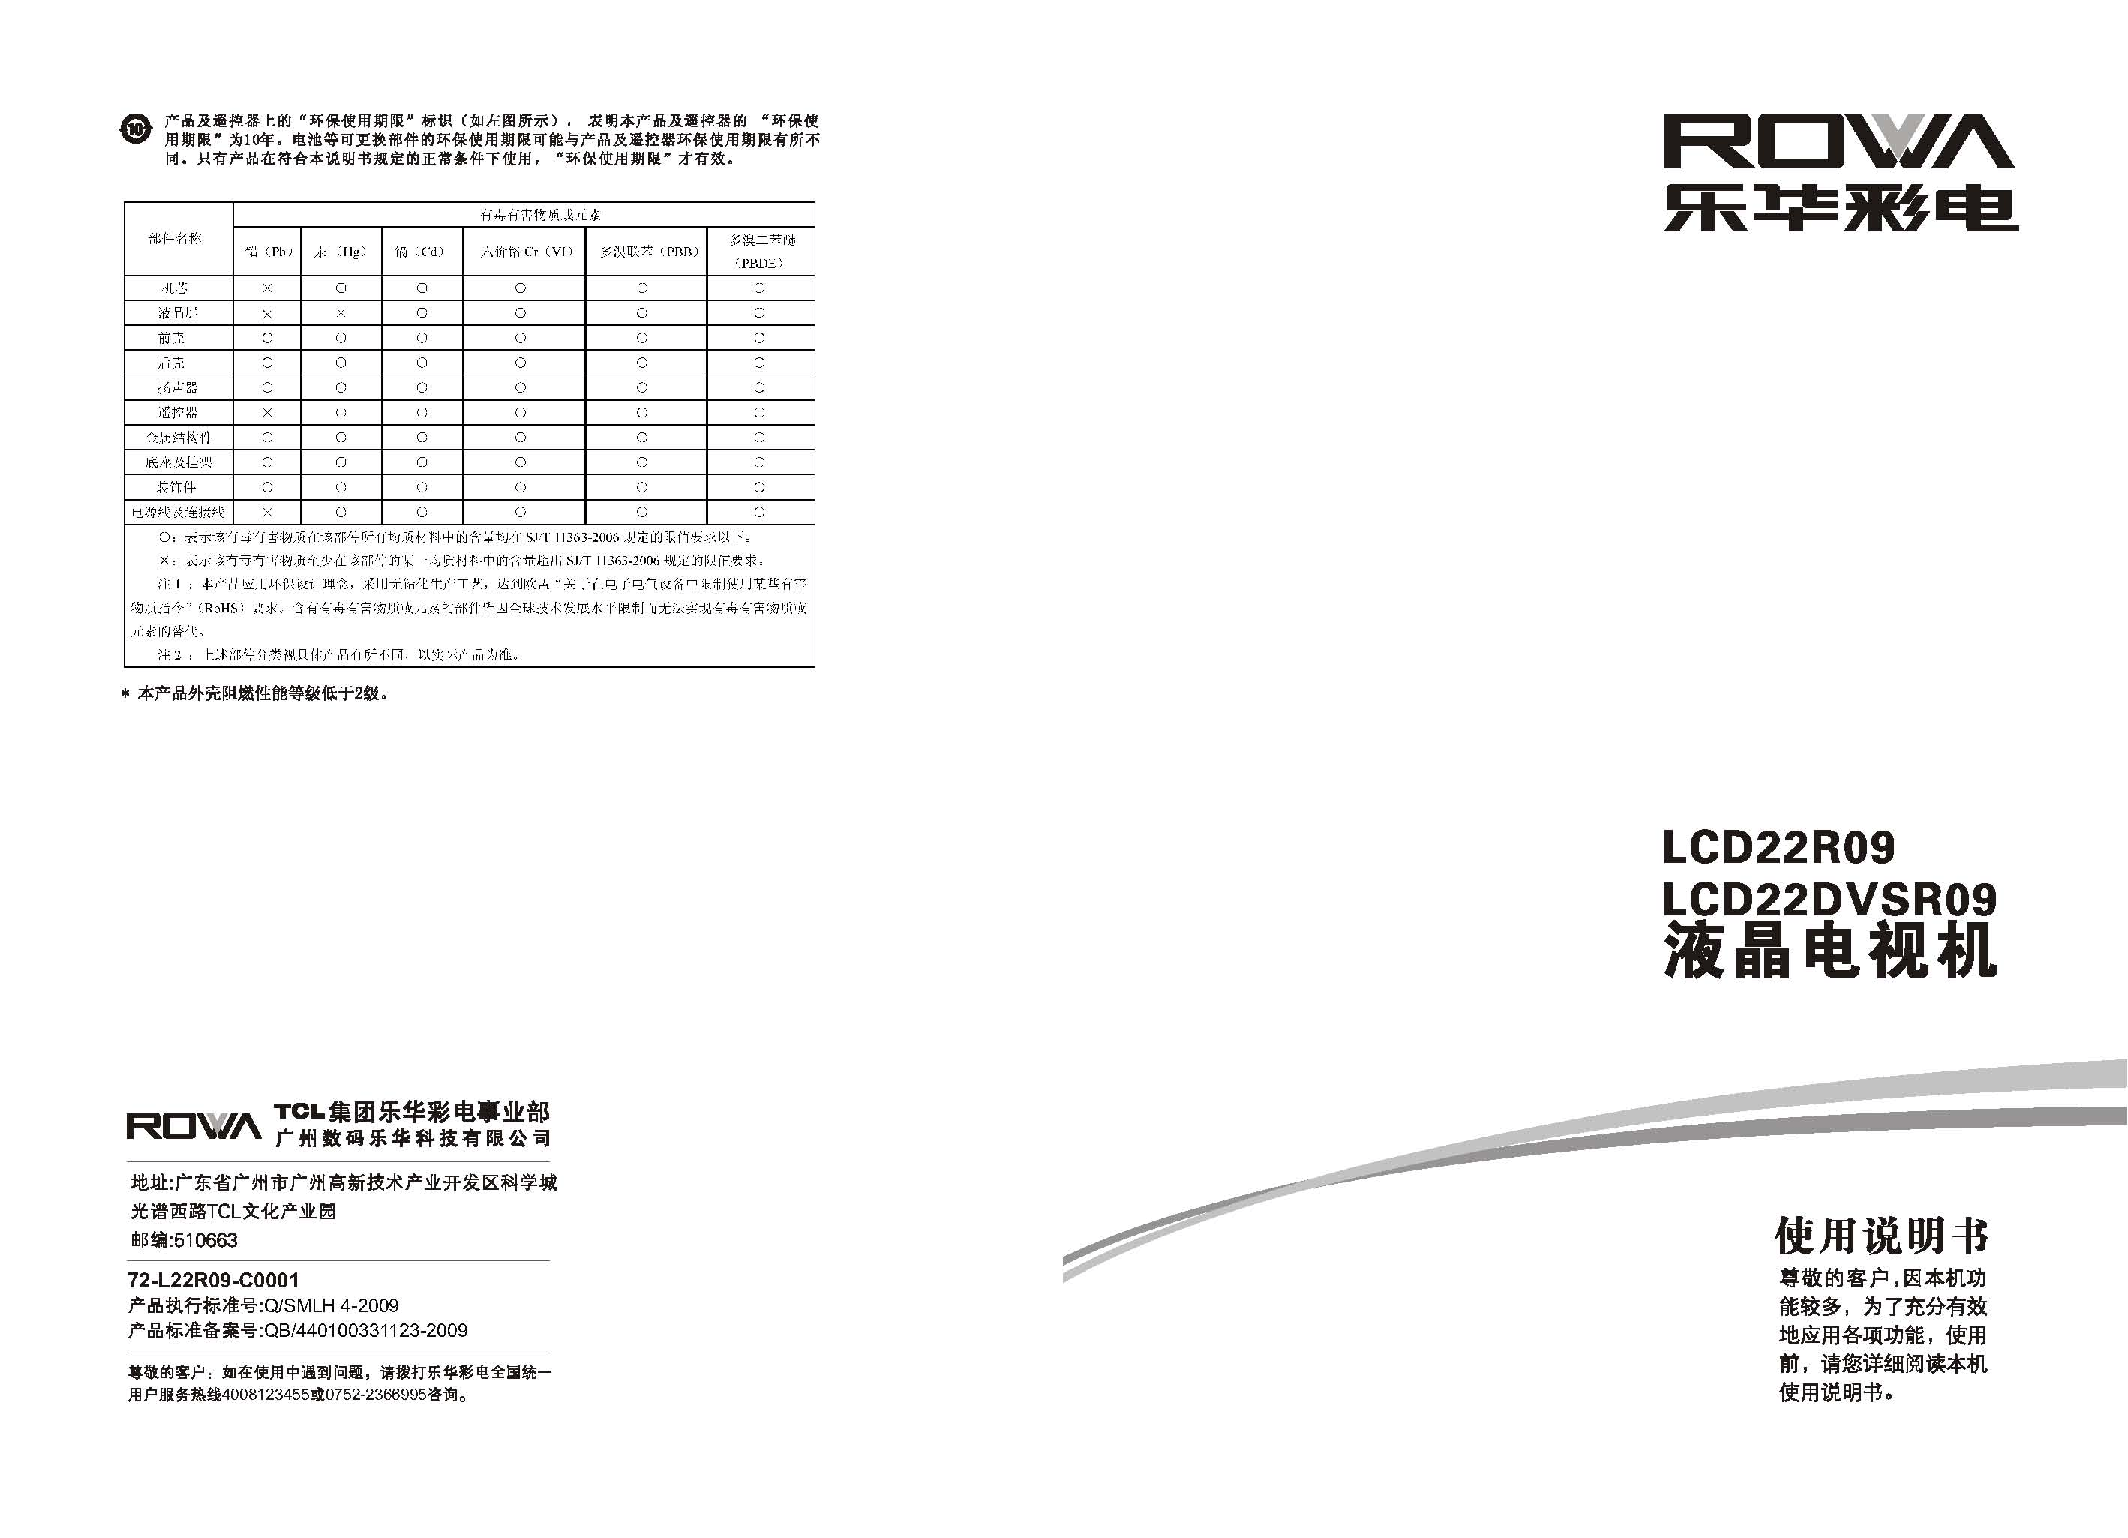 乐华 ROWA LCD22DVSR09 使用说明书 封面